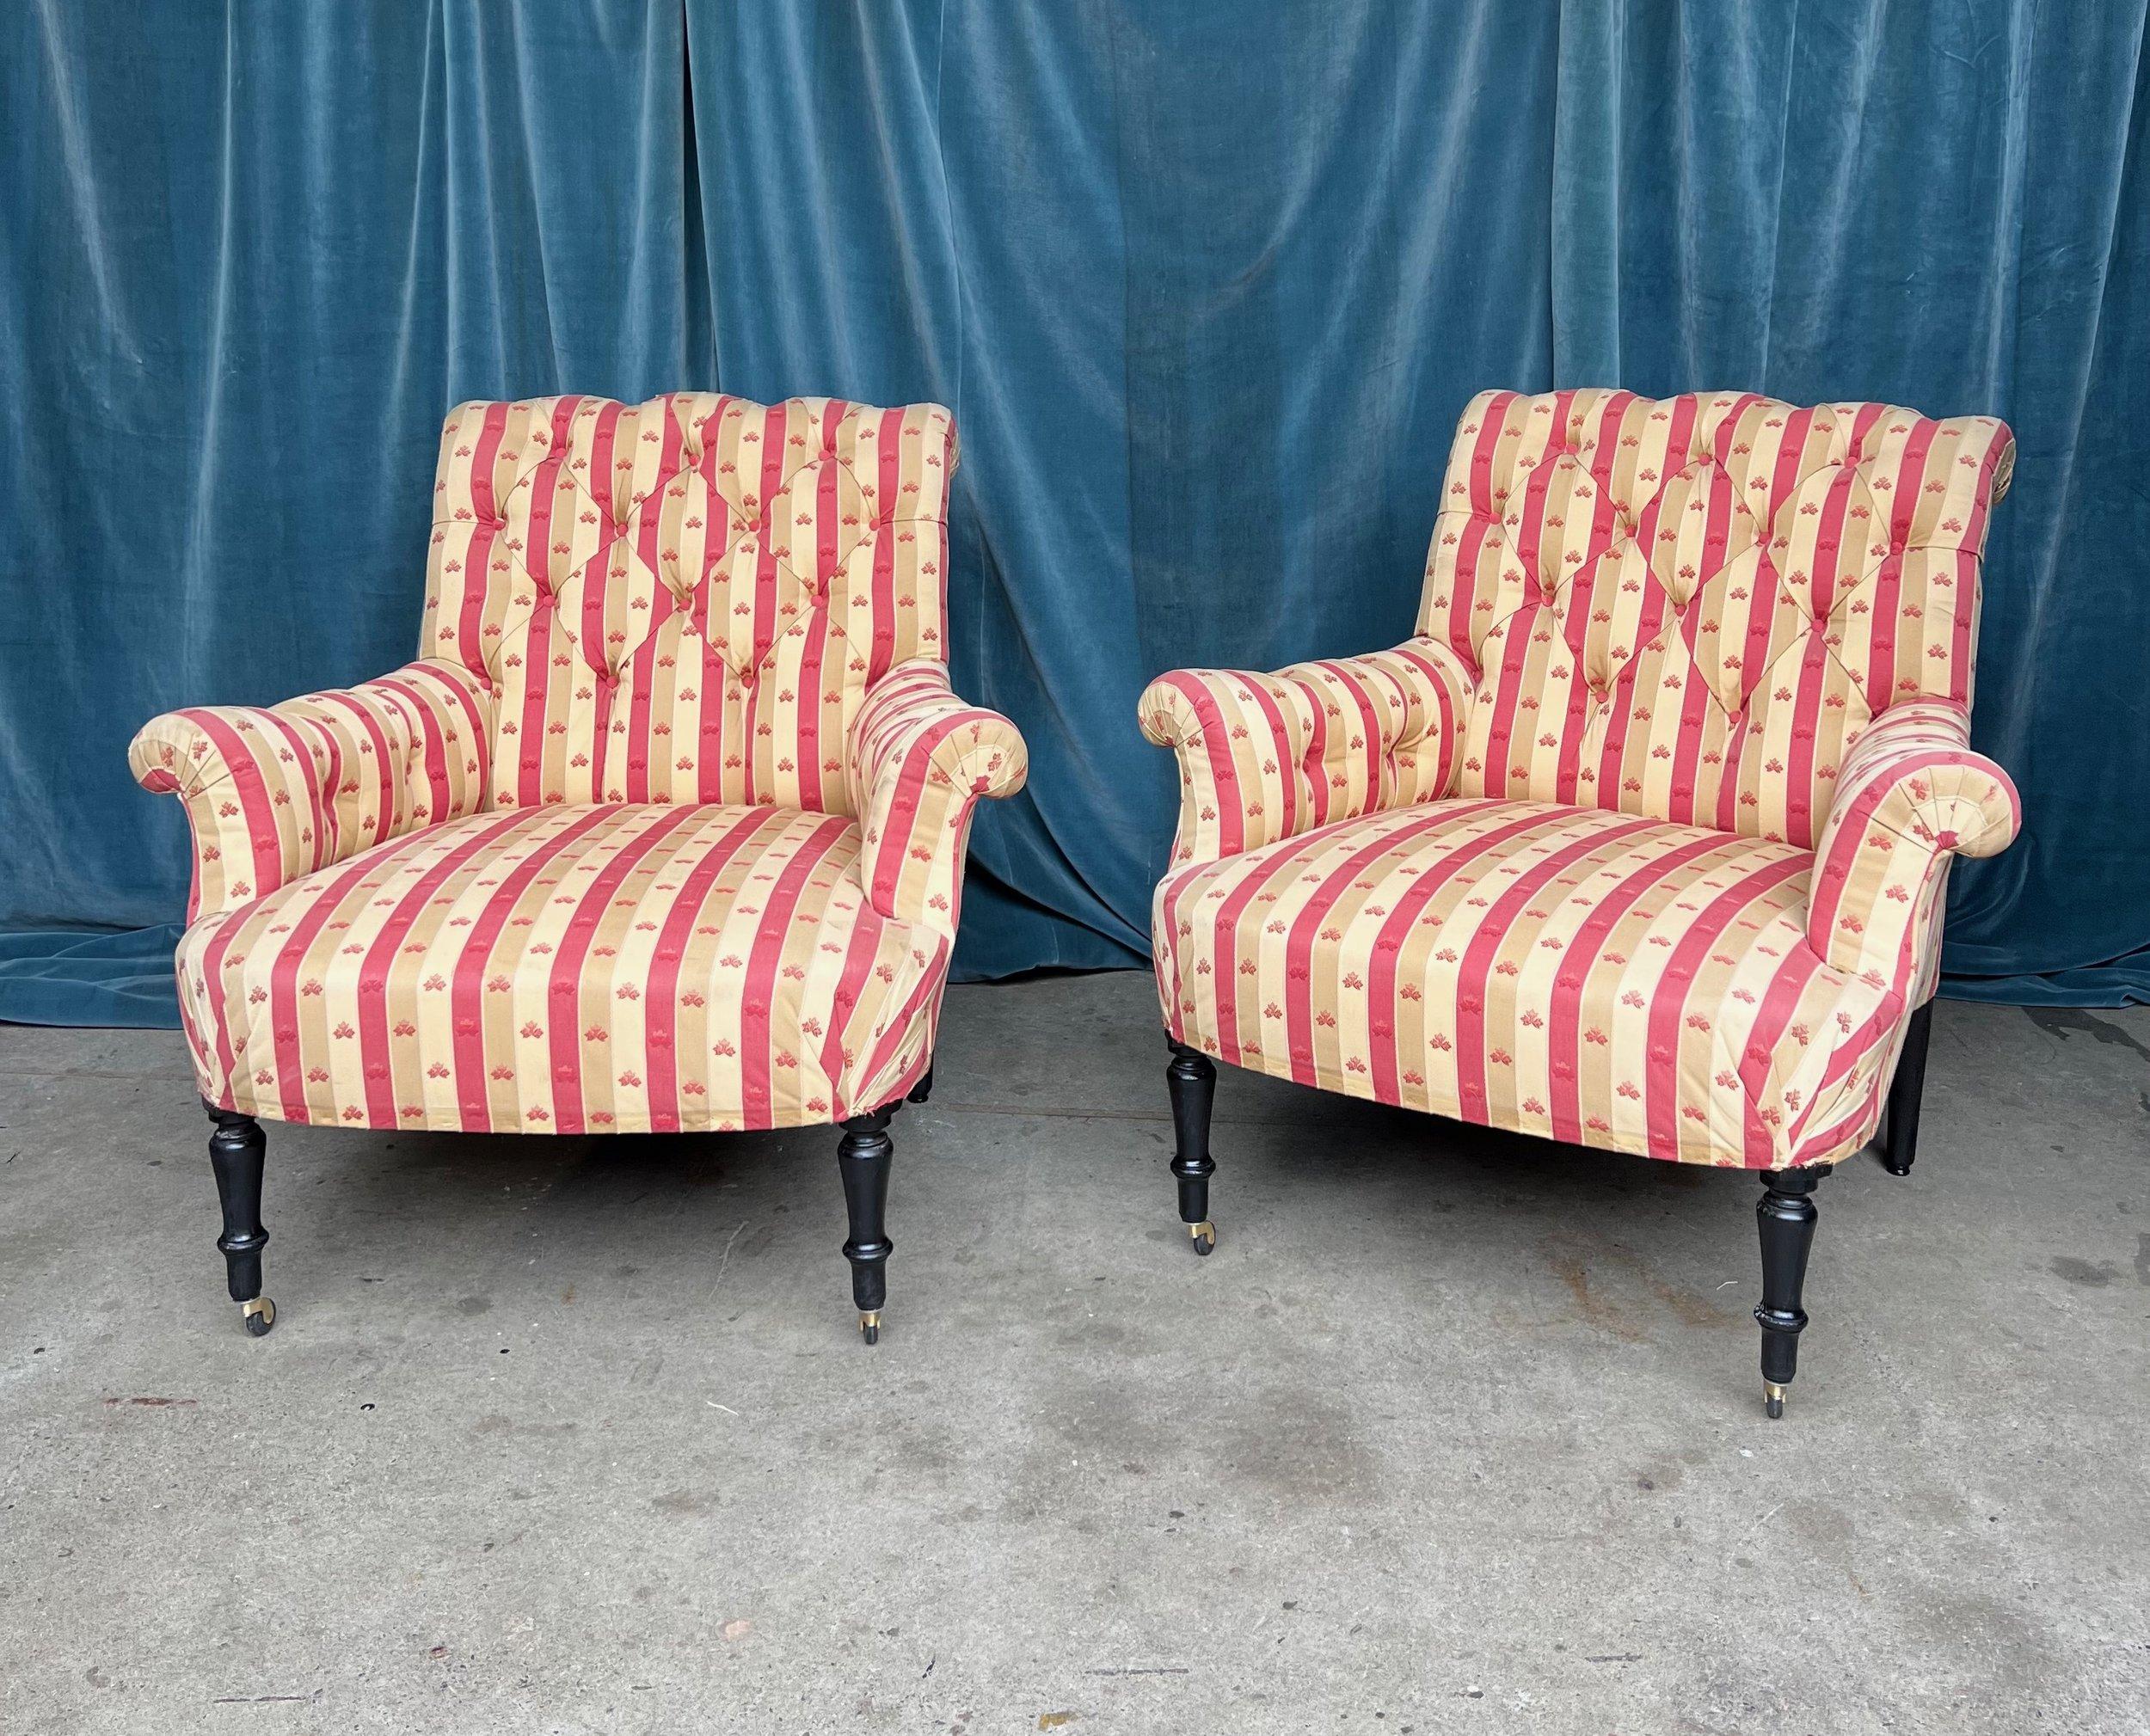 Paire de fauteuils Napoléon III en tissu rayé rouge et beige. Fabriquées avec une qualité et un souci du détail que l'on ne retrouve pas dans le mobilier moderne, ces magnifiques chaises de grande taille feront sensation dans n'importe quelle pièce.